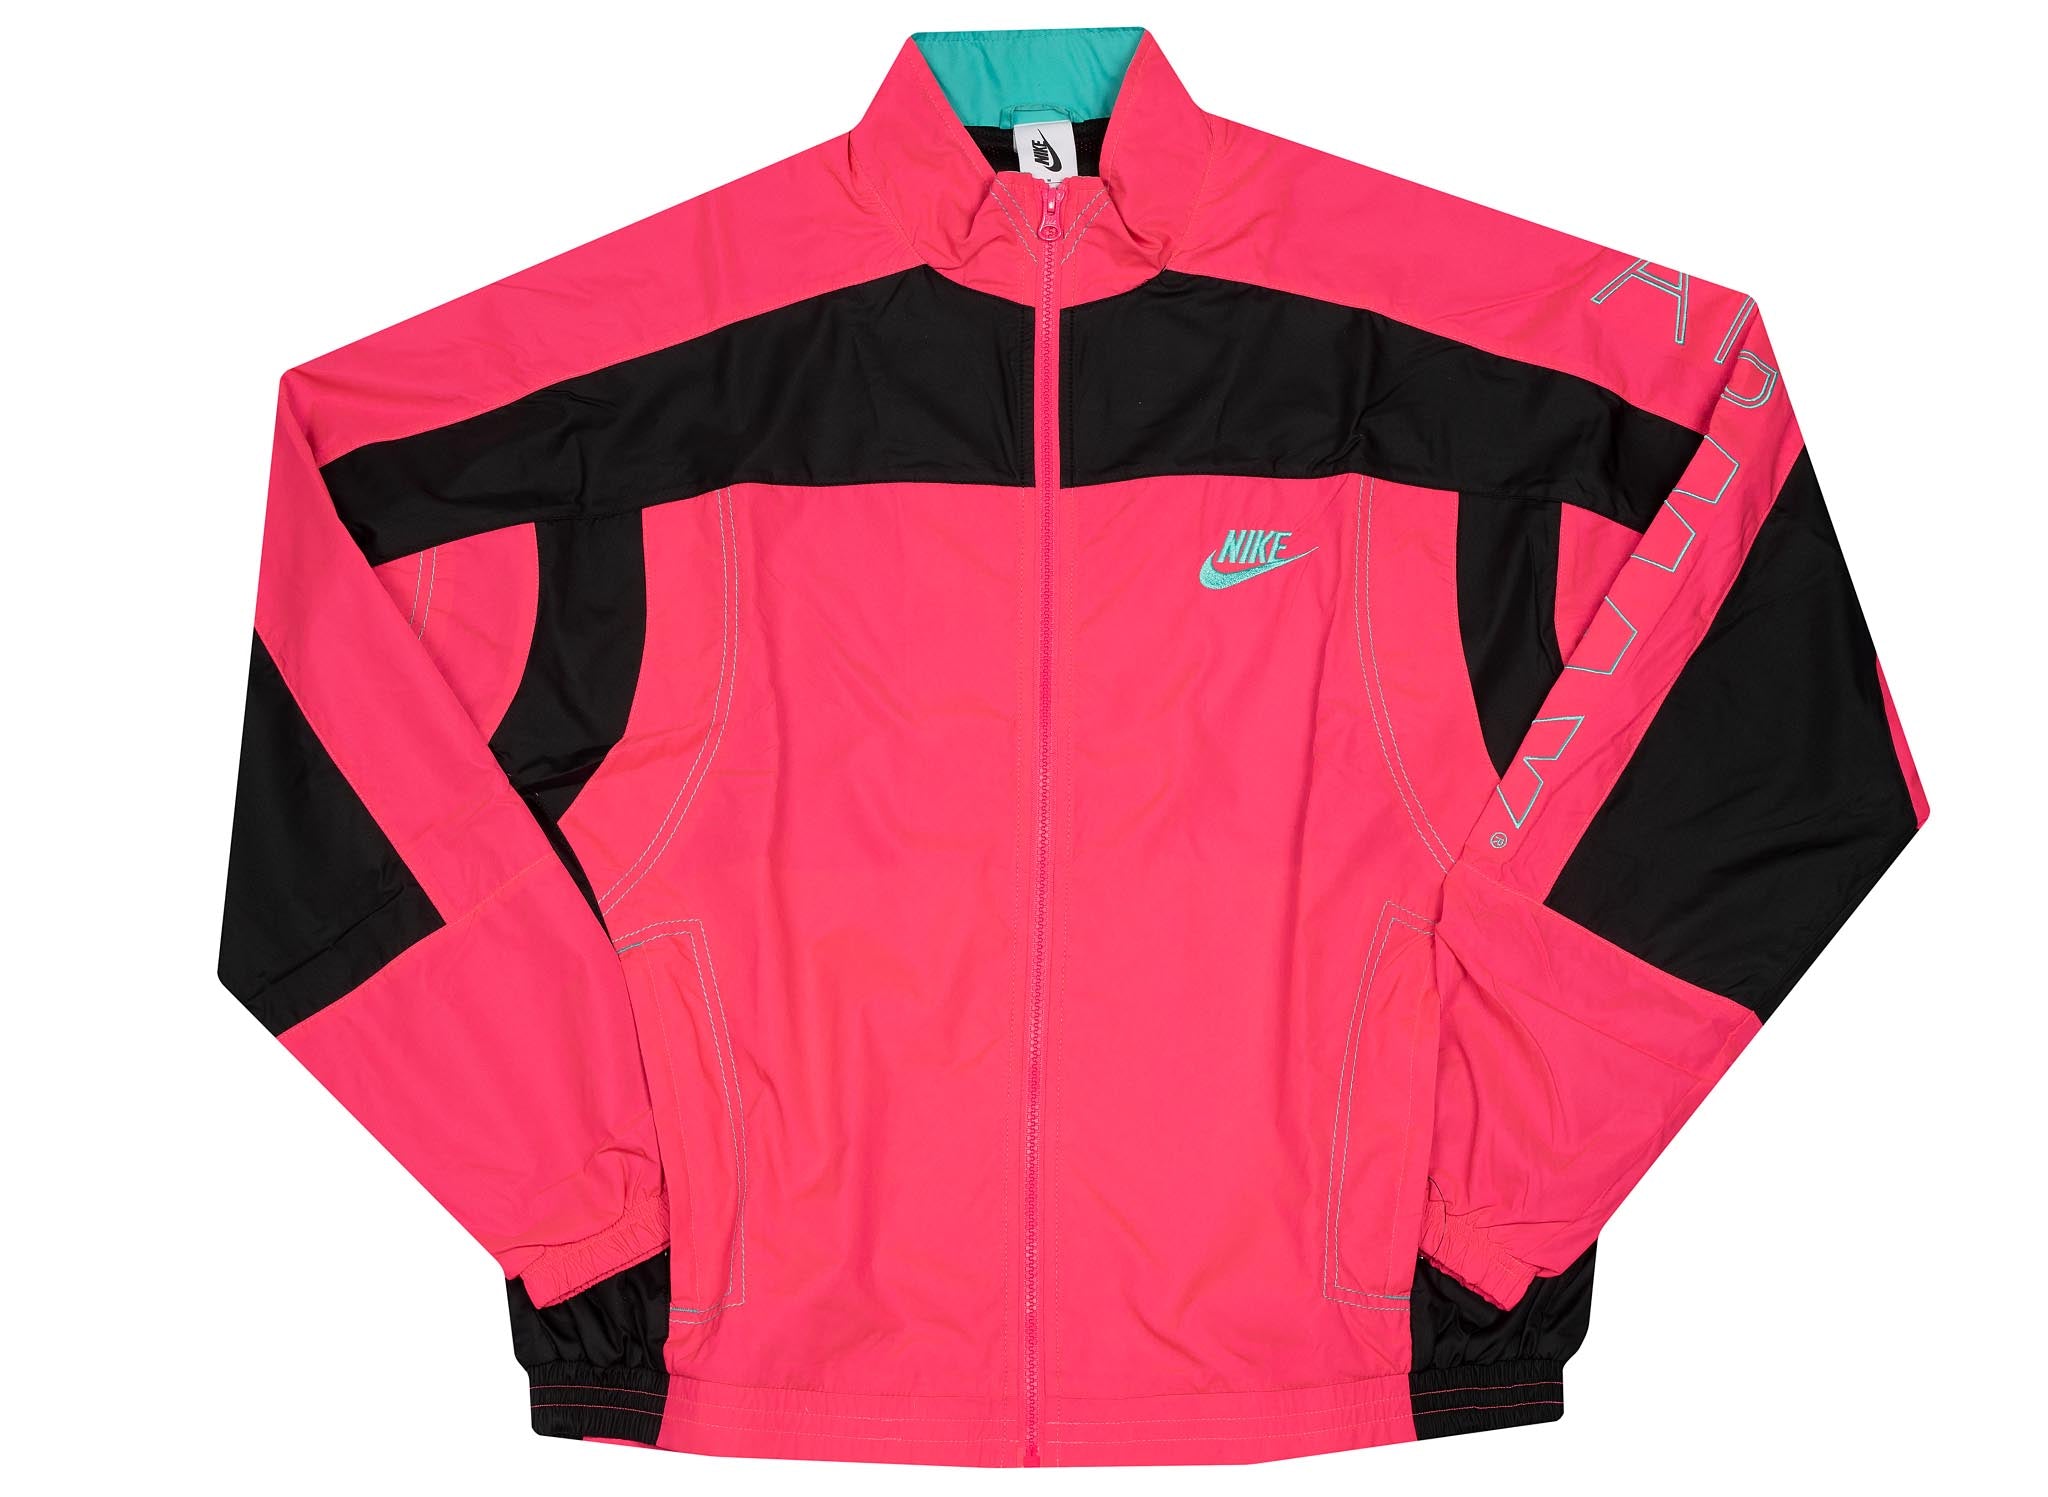 atmos x Nike Jacket - Pink / Black 